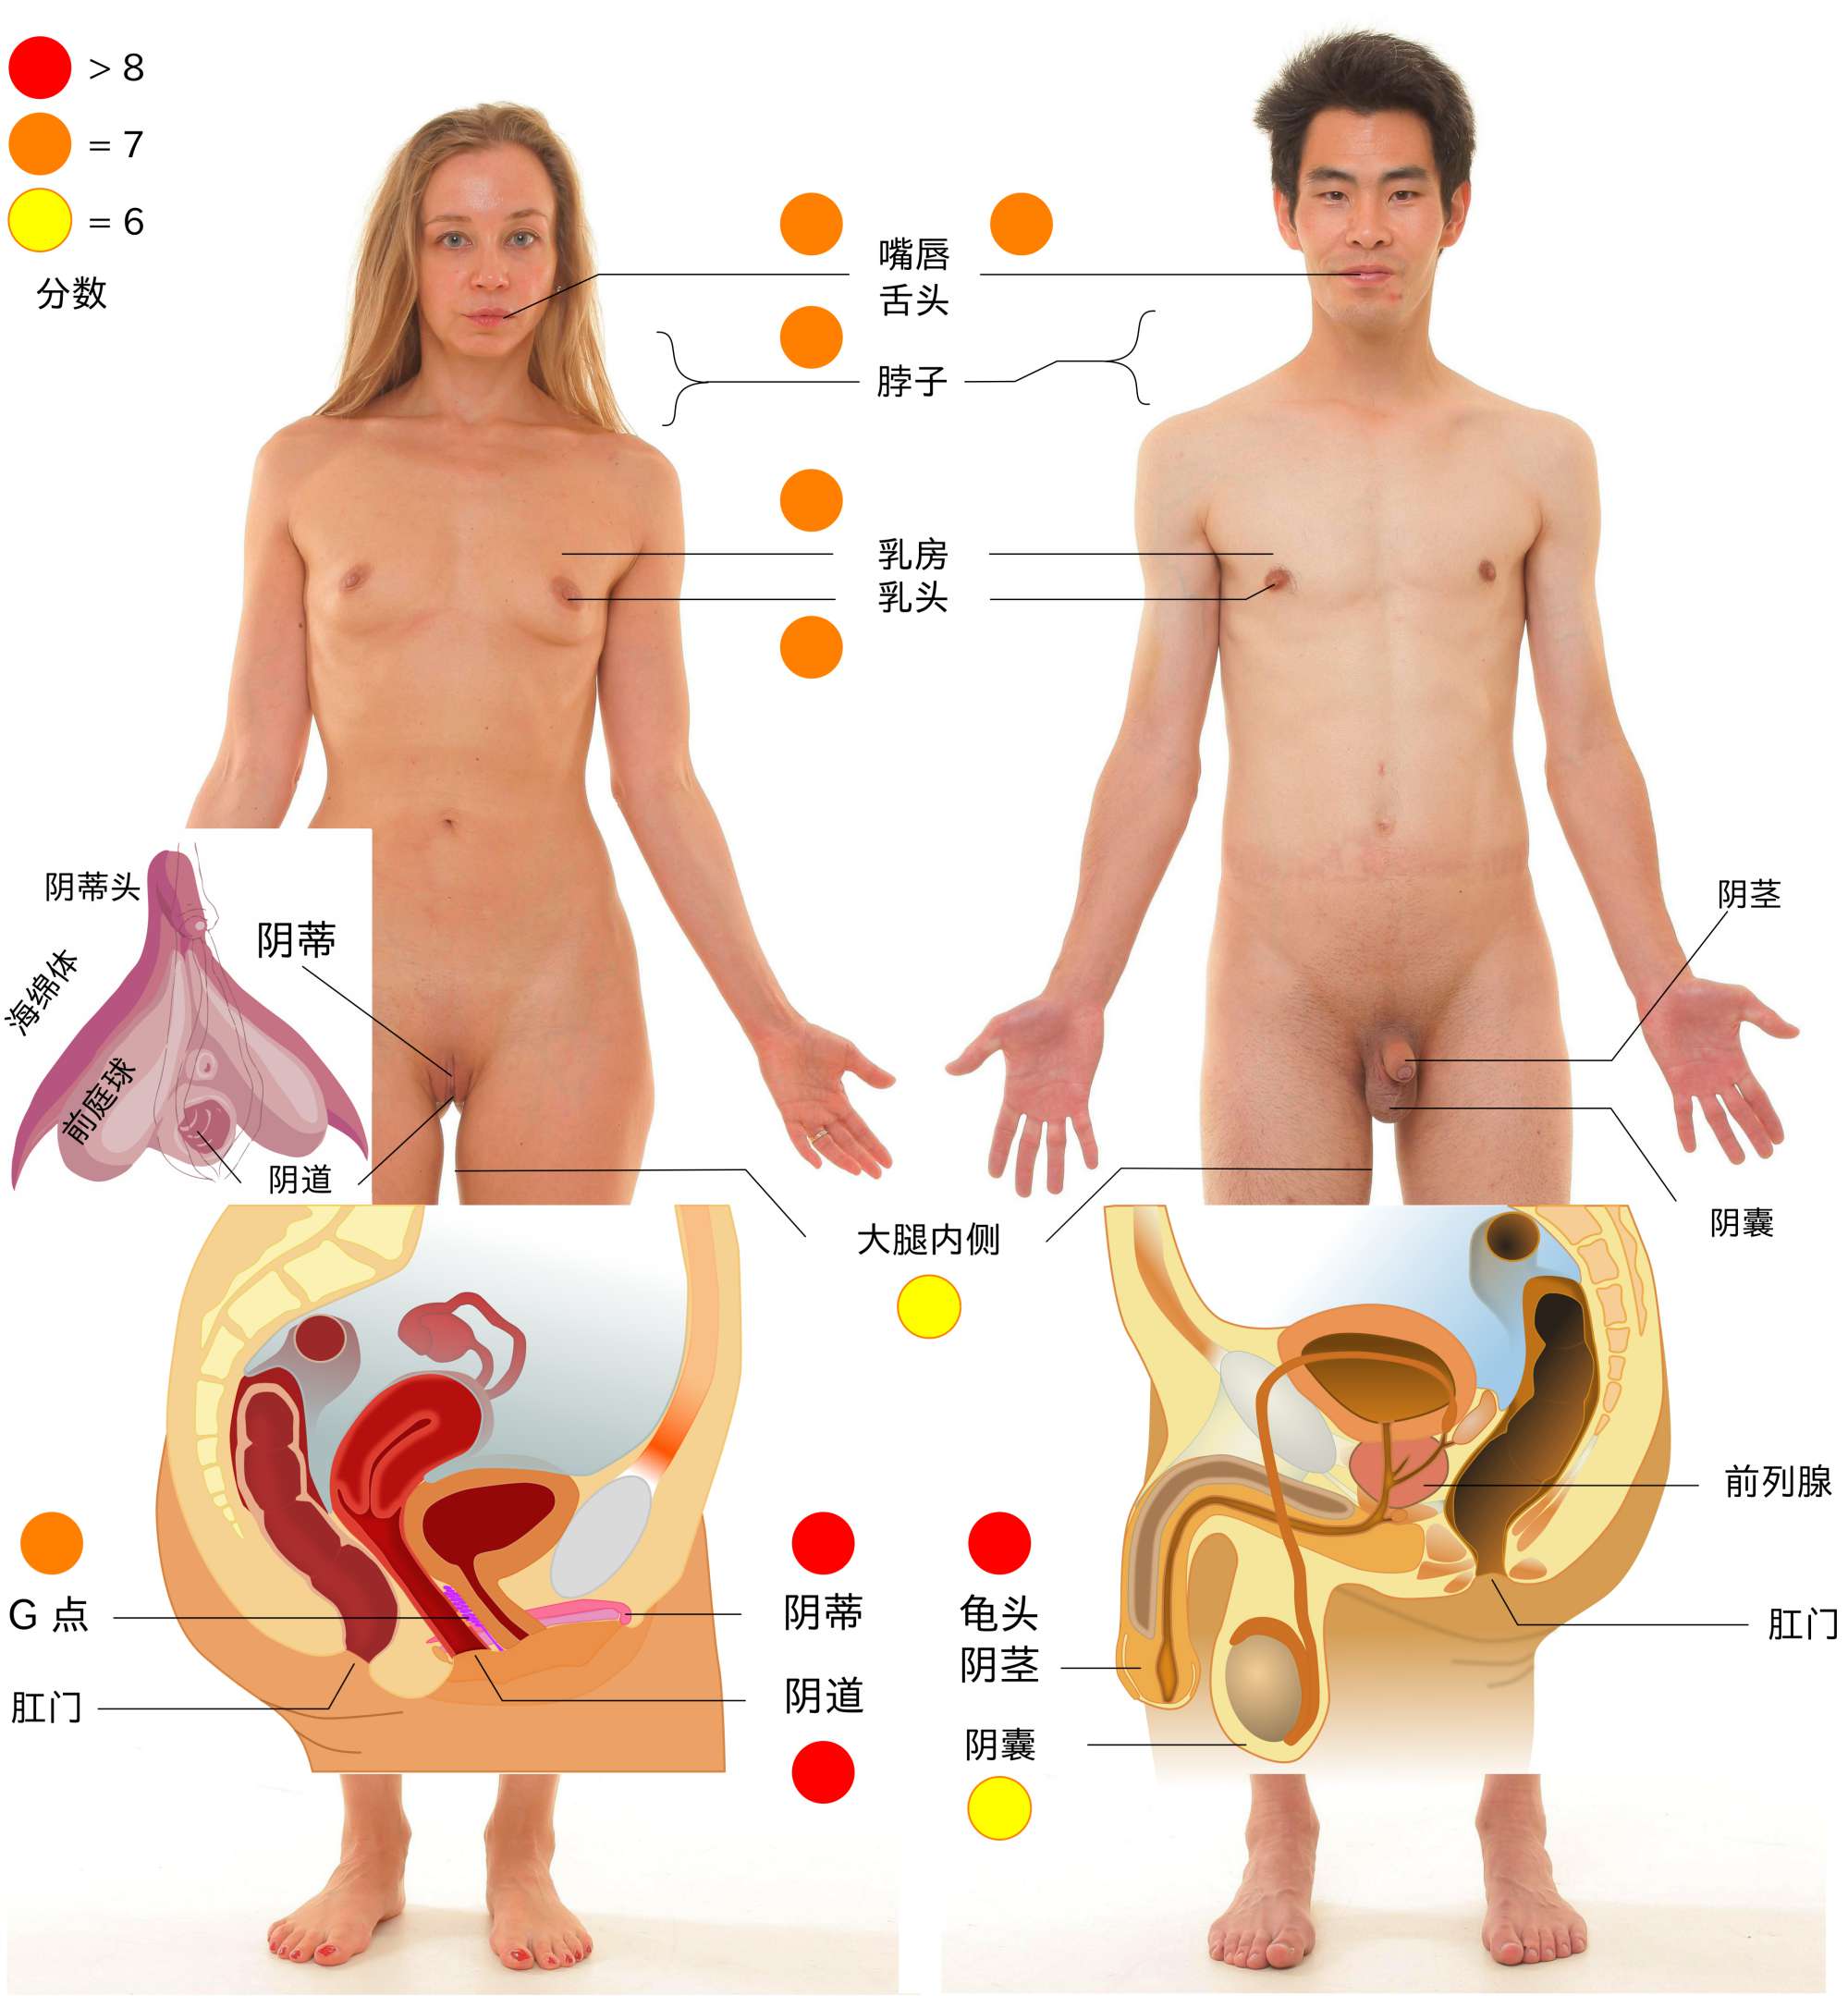 人体的主要性感带。详细说明请参考下文。